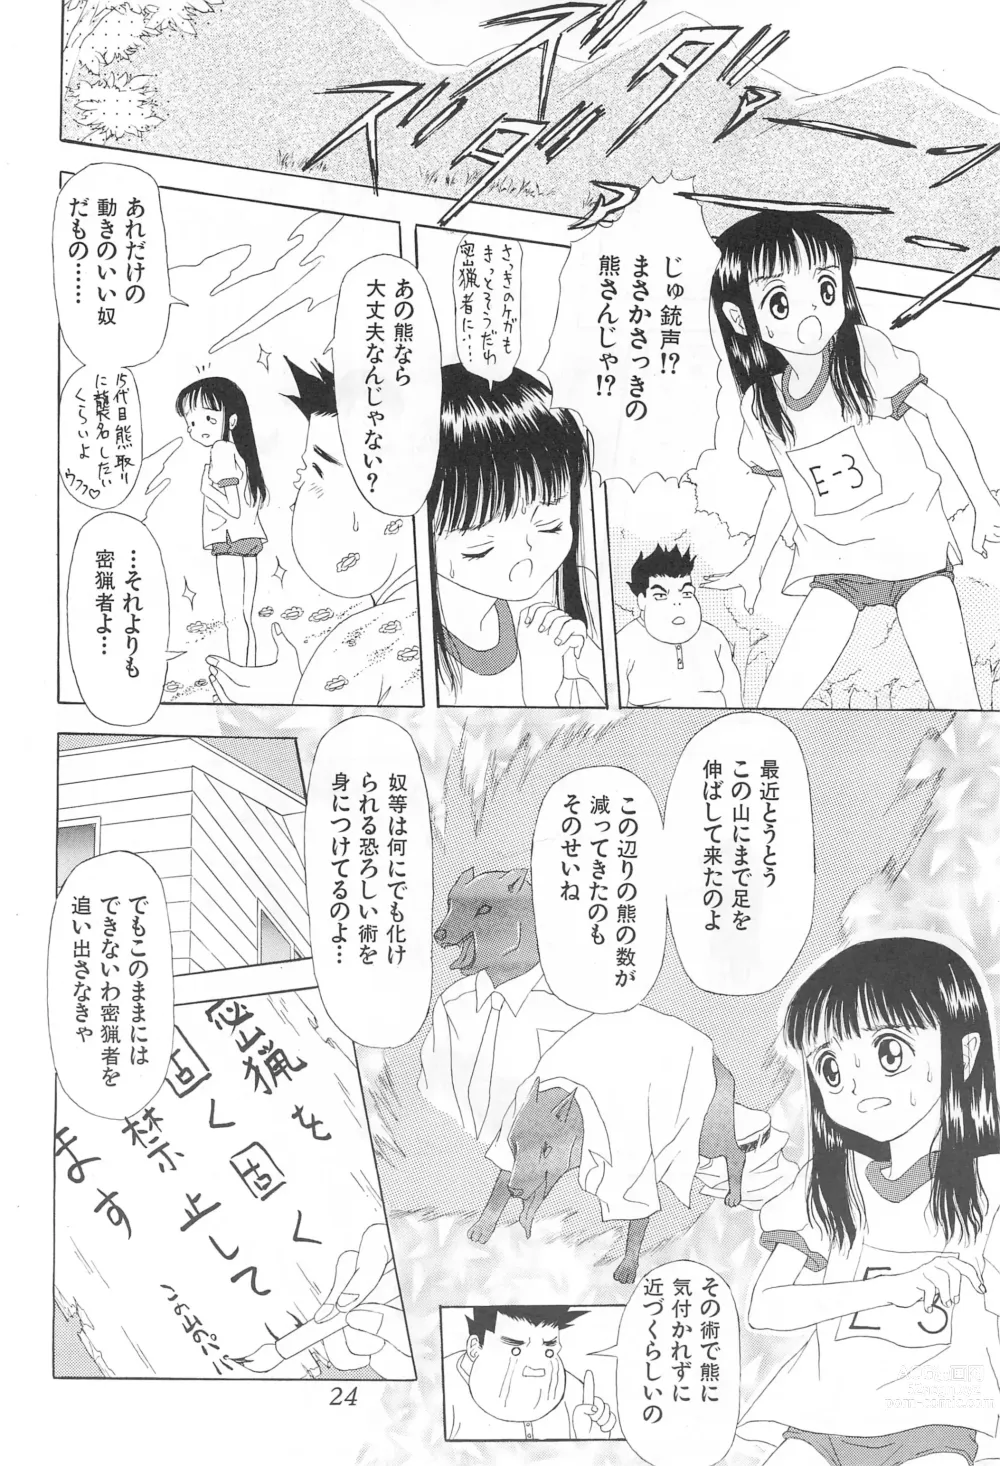 Page 24 of doujinshi Amattaharunen 2